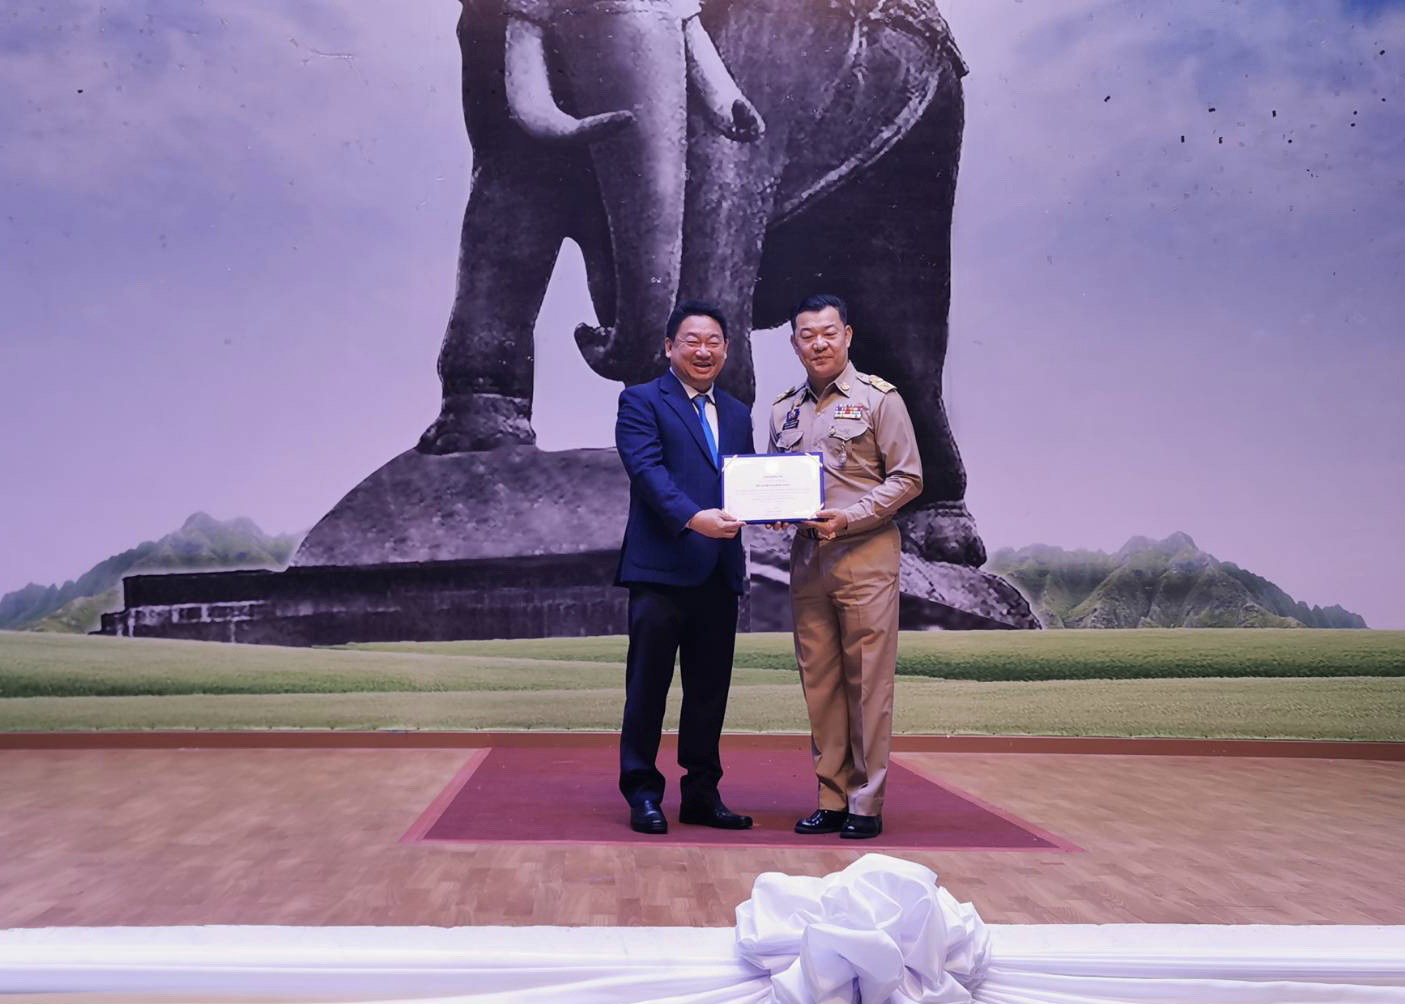 ภาพข่าว: NER รับรางวัลรองชนะเลิศอันดับที่ 2 ผู้นำอาเซียนด้านการพัฒนาชนบทและขจัดความยากจน ประเภทองค์กรภาคธุรกิจเอกชน (Private Sector) ครั้งที่ 4 ประจำปี 2562